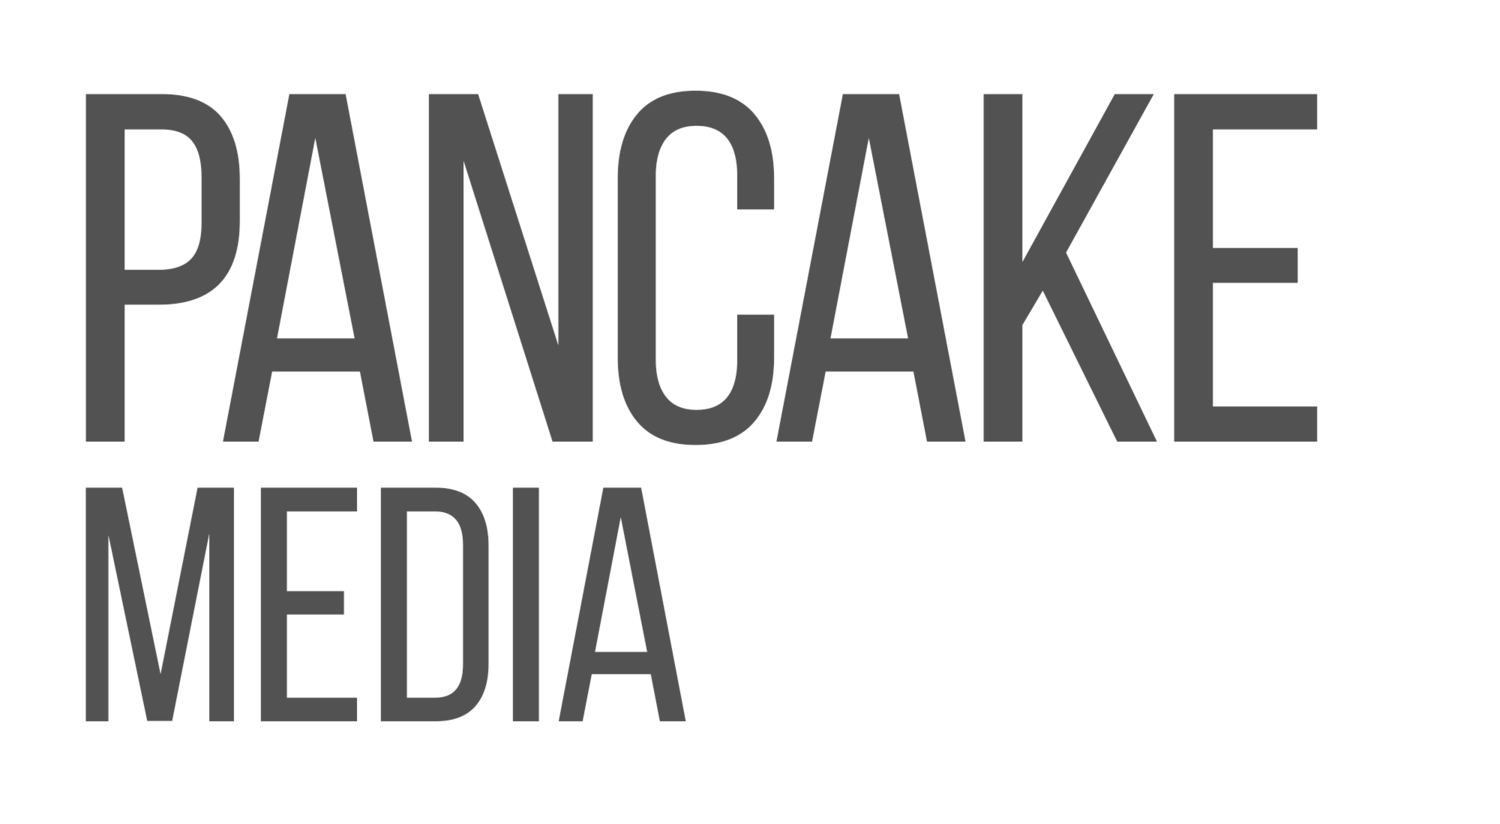 Pancake Media